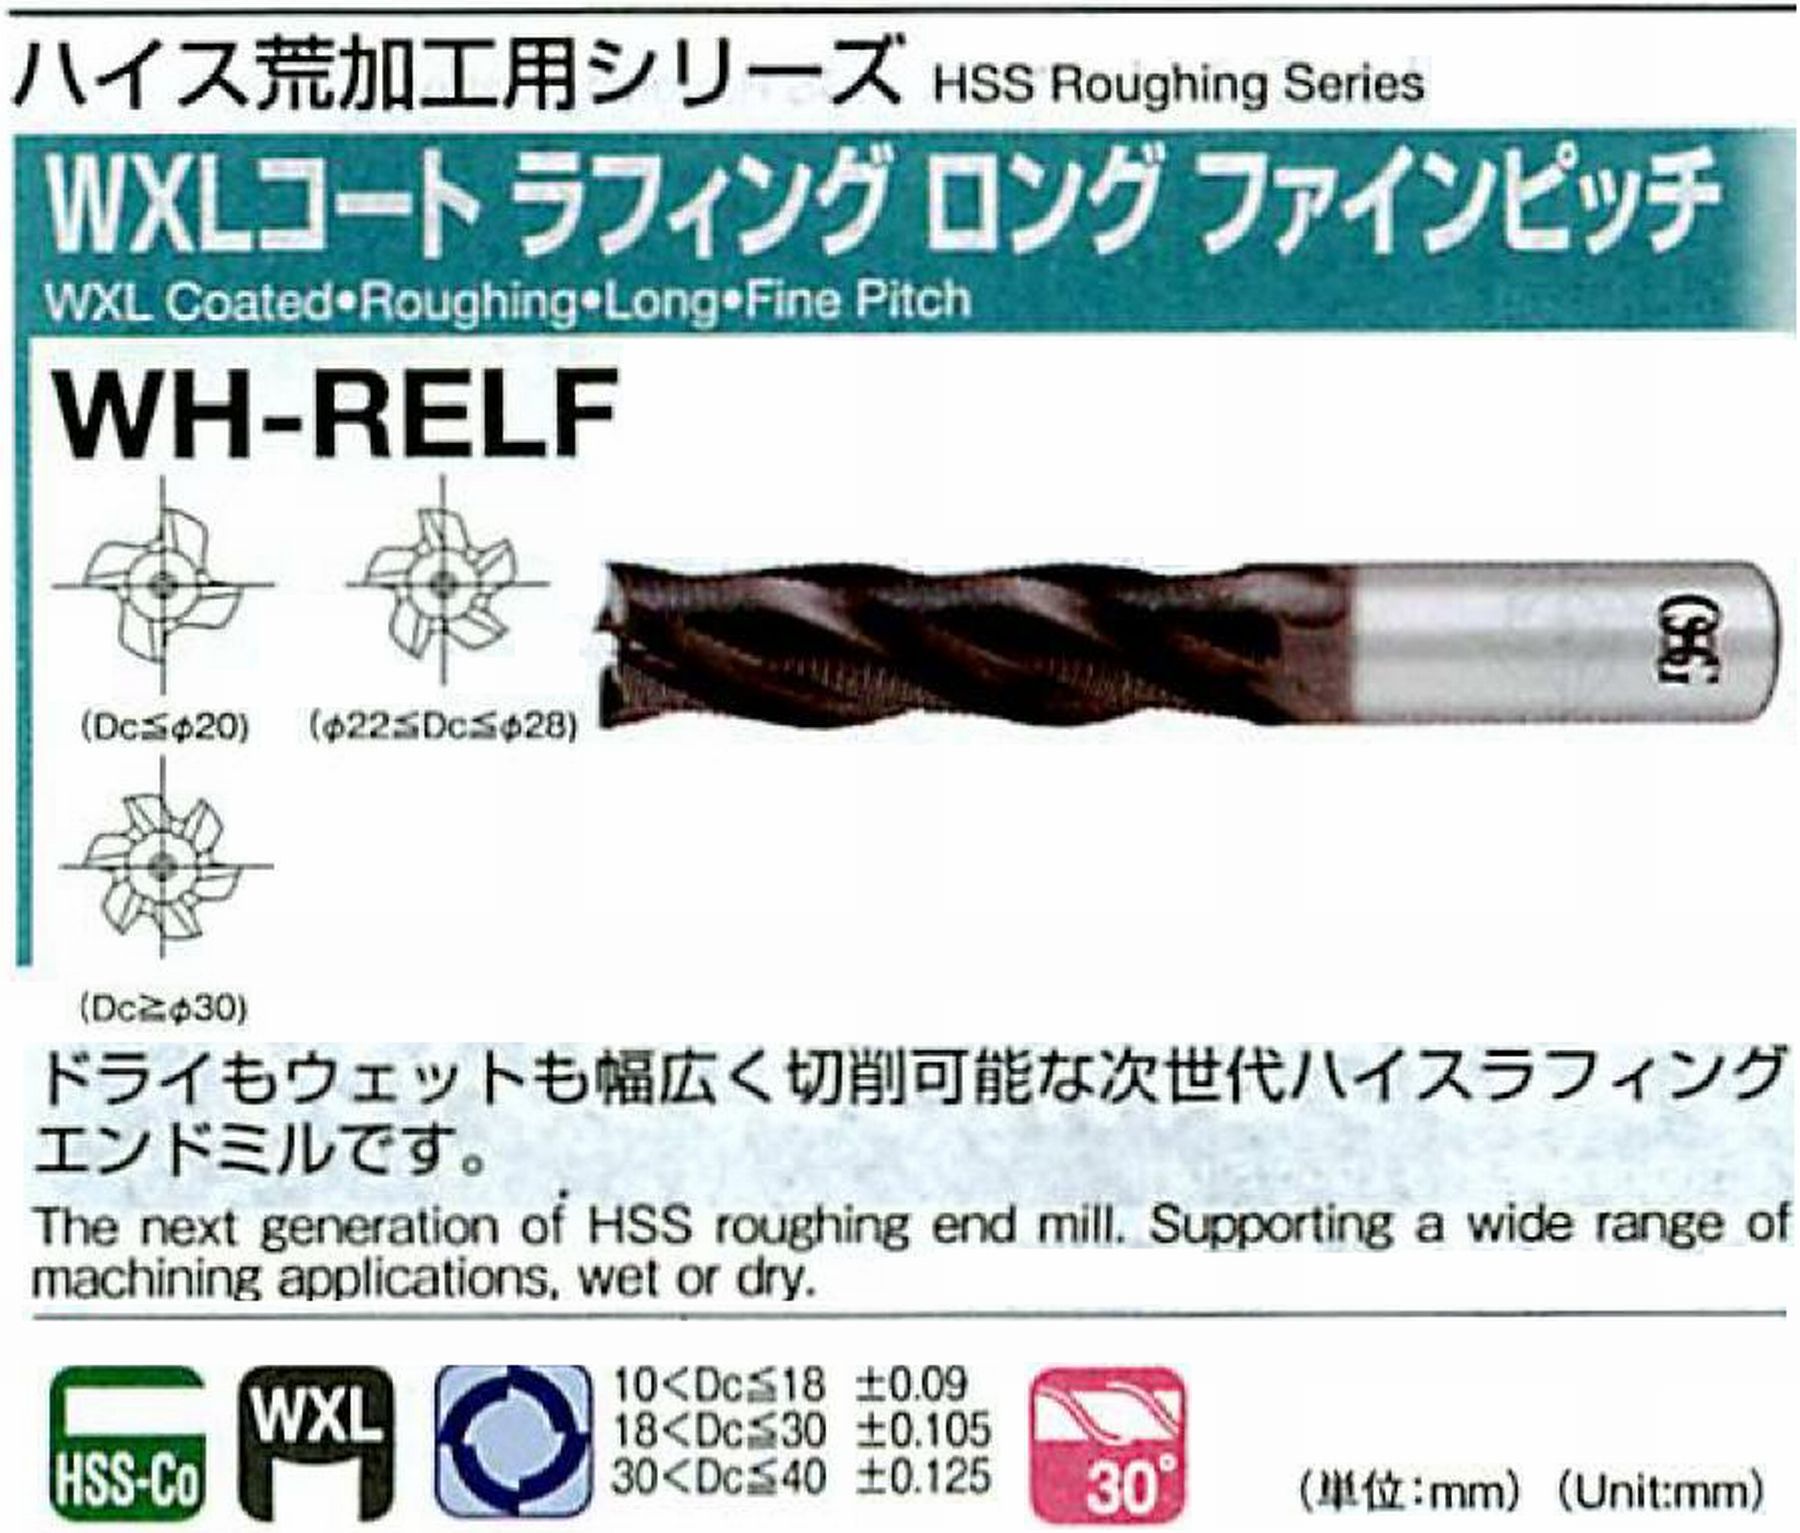 オーエスジー/OSG WXLコートラフィング ロング ファインピッチ WH-RELF 外径10 全長100 刃長45 シャンク径10mm 刃数4